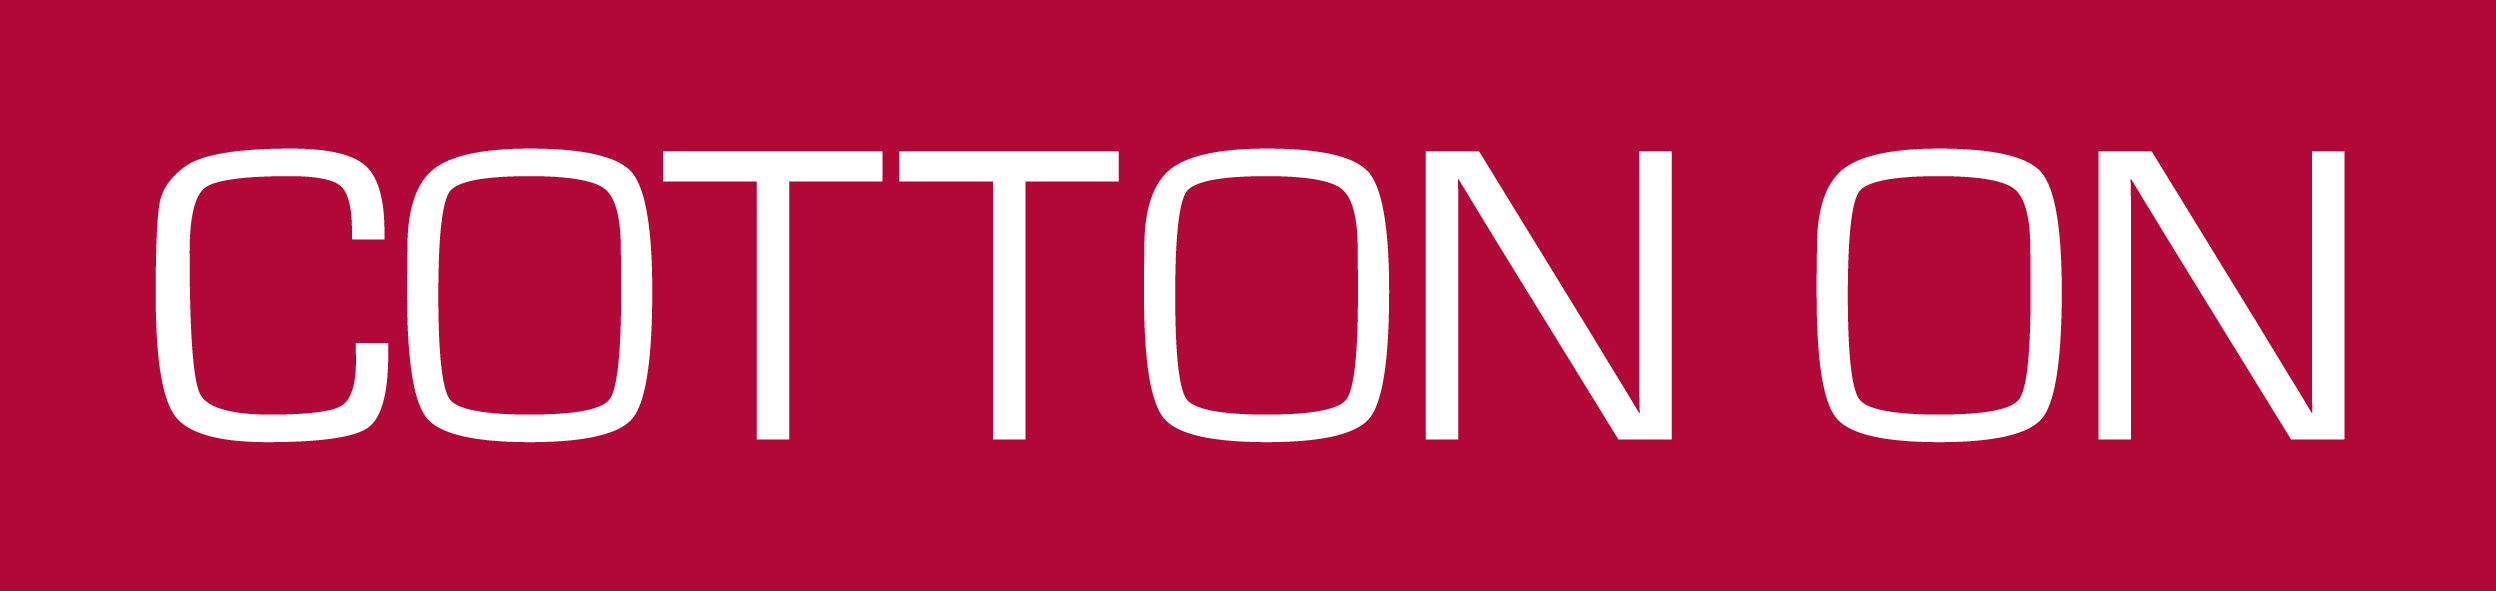 Cottonon ADULT Logo 1Colour RED